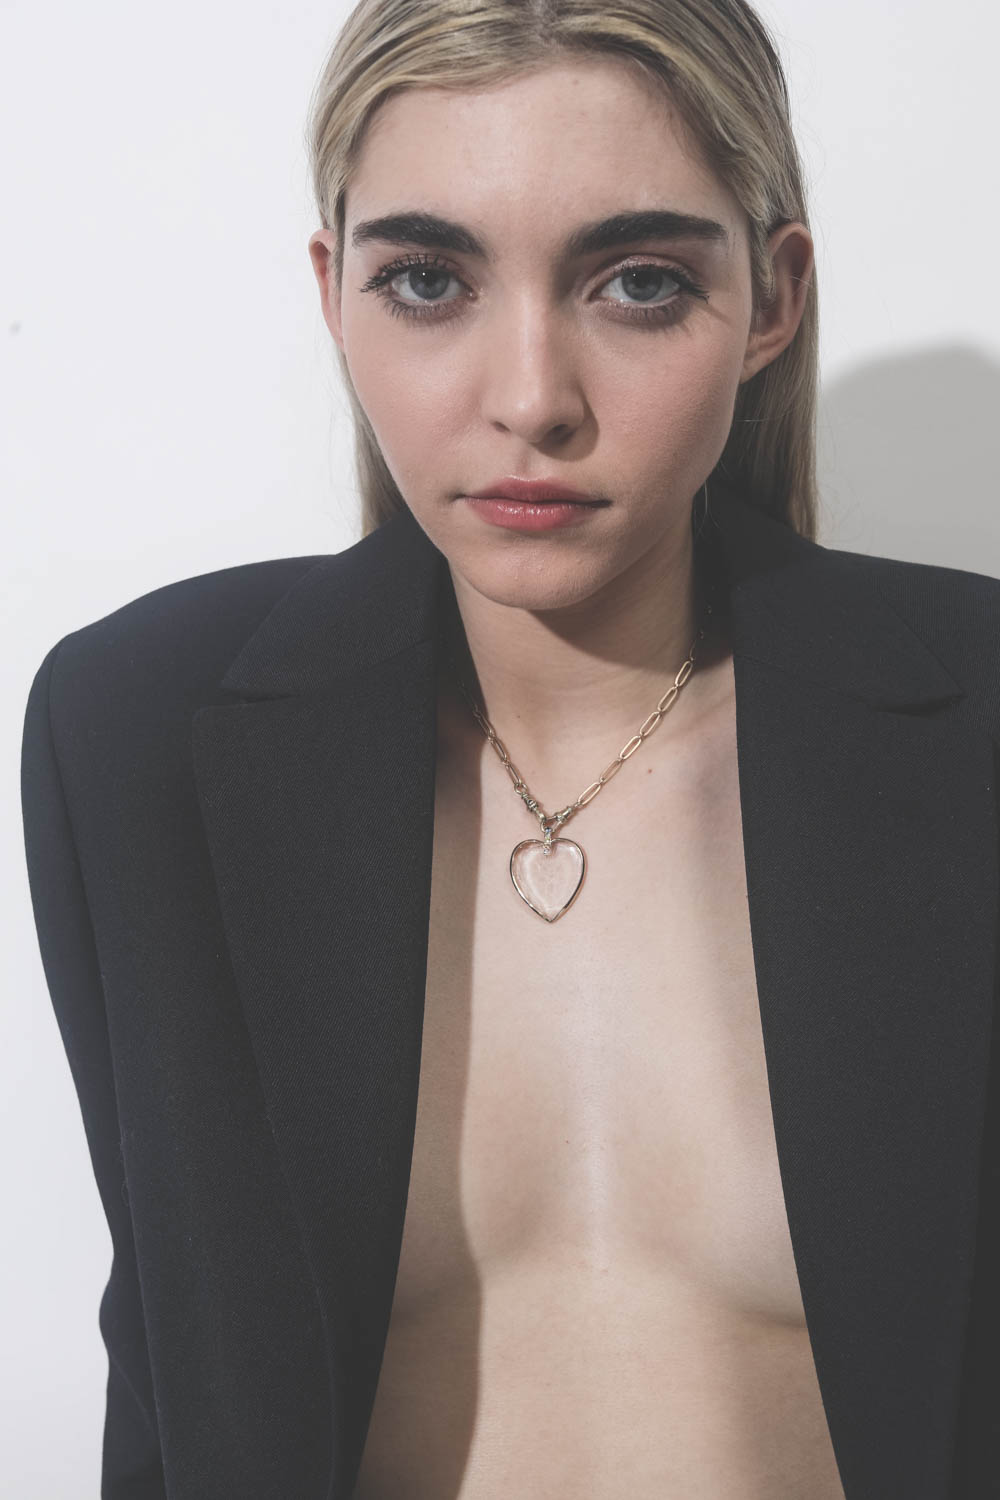 Collier ras de cou en or avec pendentif coeur en cristal Gabin N°2 Pascale Monvoisin. Porté avec une veste noire.